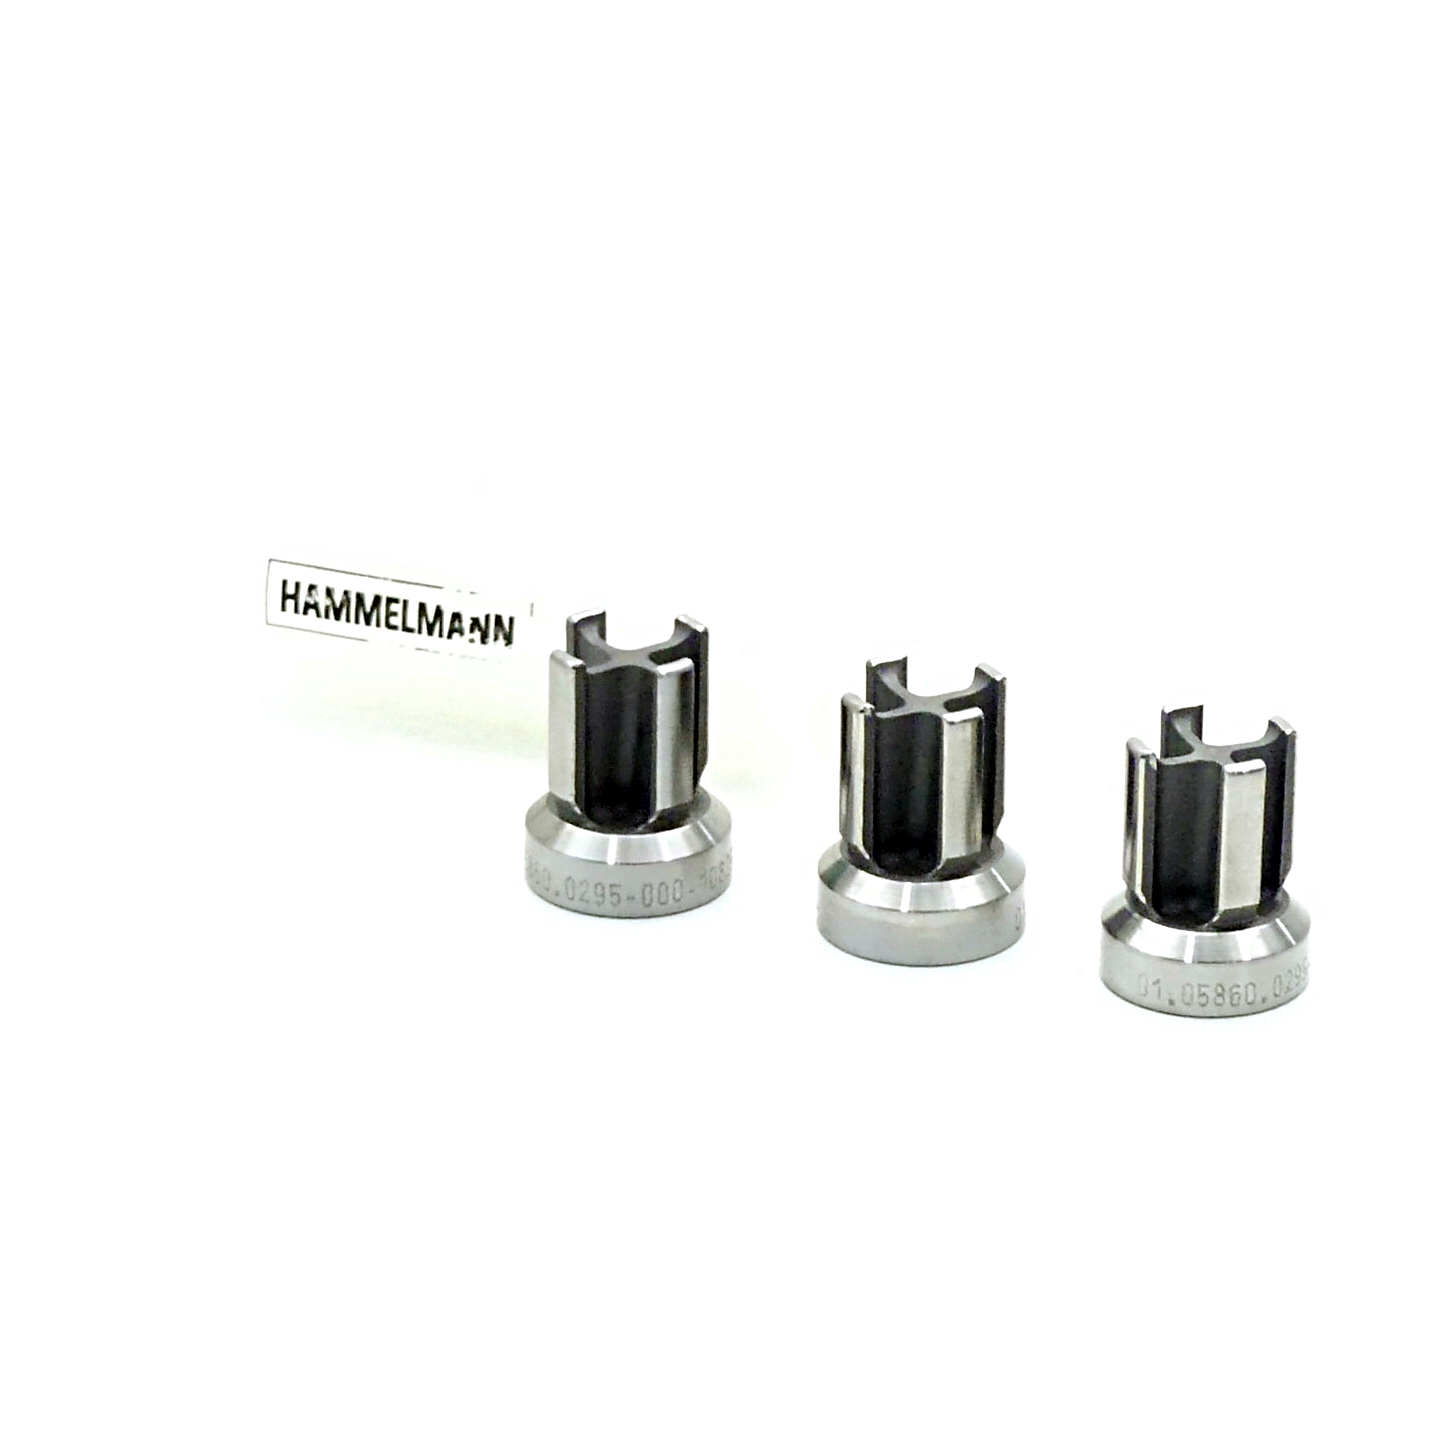 3 Pieces valve parts 01.05860.0295 